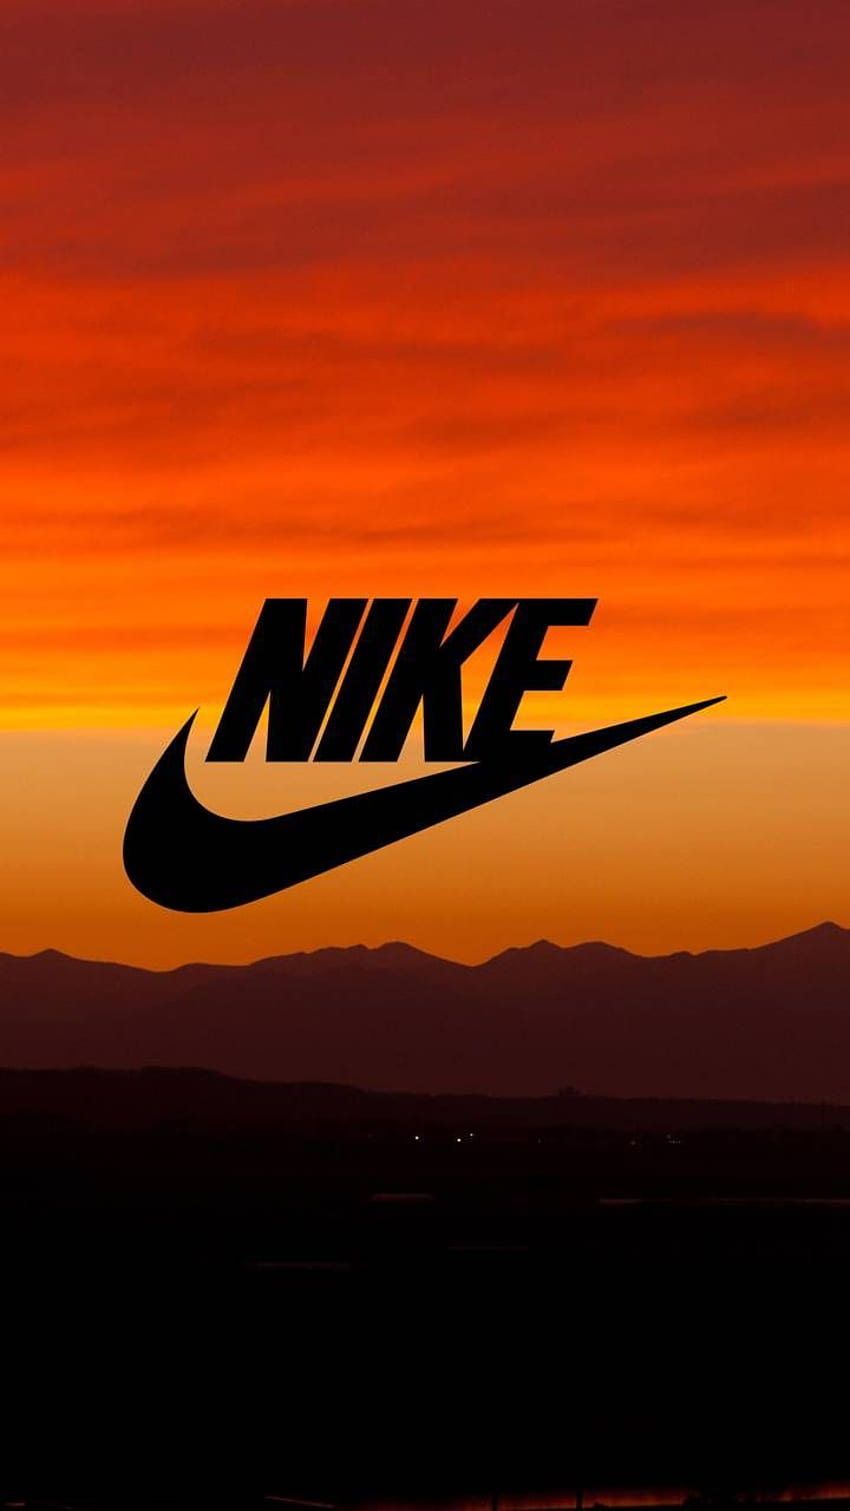 Bạn là fan hâm mộ của thương hiệu Nike? Bộ sưu tập hình nền Nike của chúng tôi sẽ khiến bạn phấn khích! Với những trang trí và hình ảnh độc đáo, Nike wallpapers sẽ khiến cho màn hình điện thoại của bạn trở nên vô cùng bắt mắt.